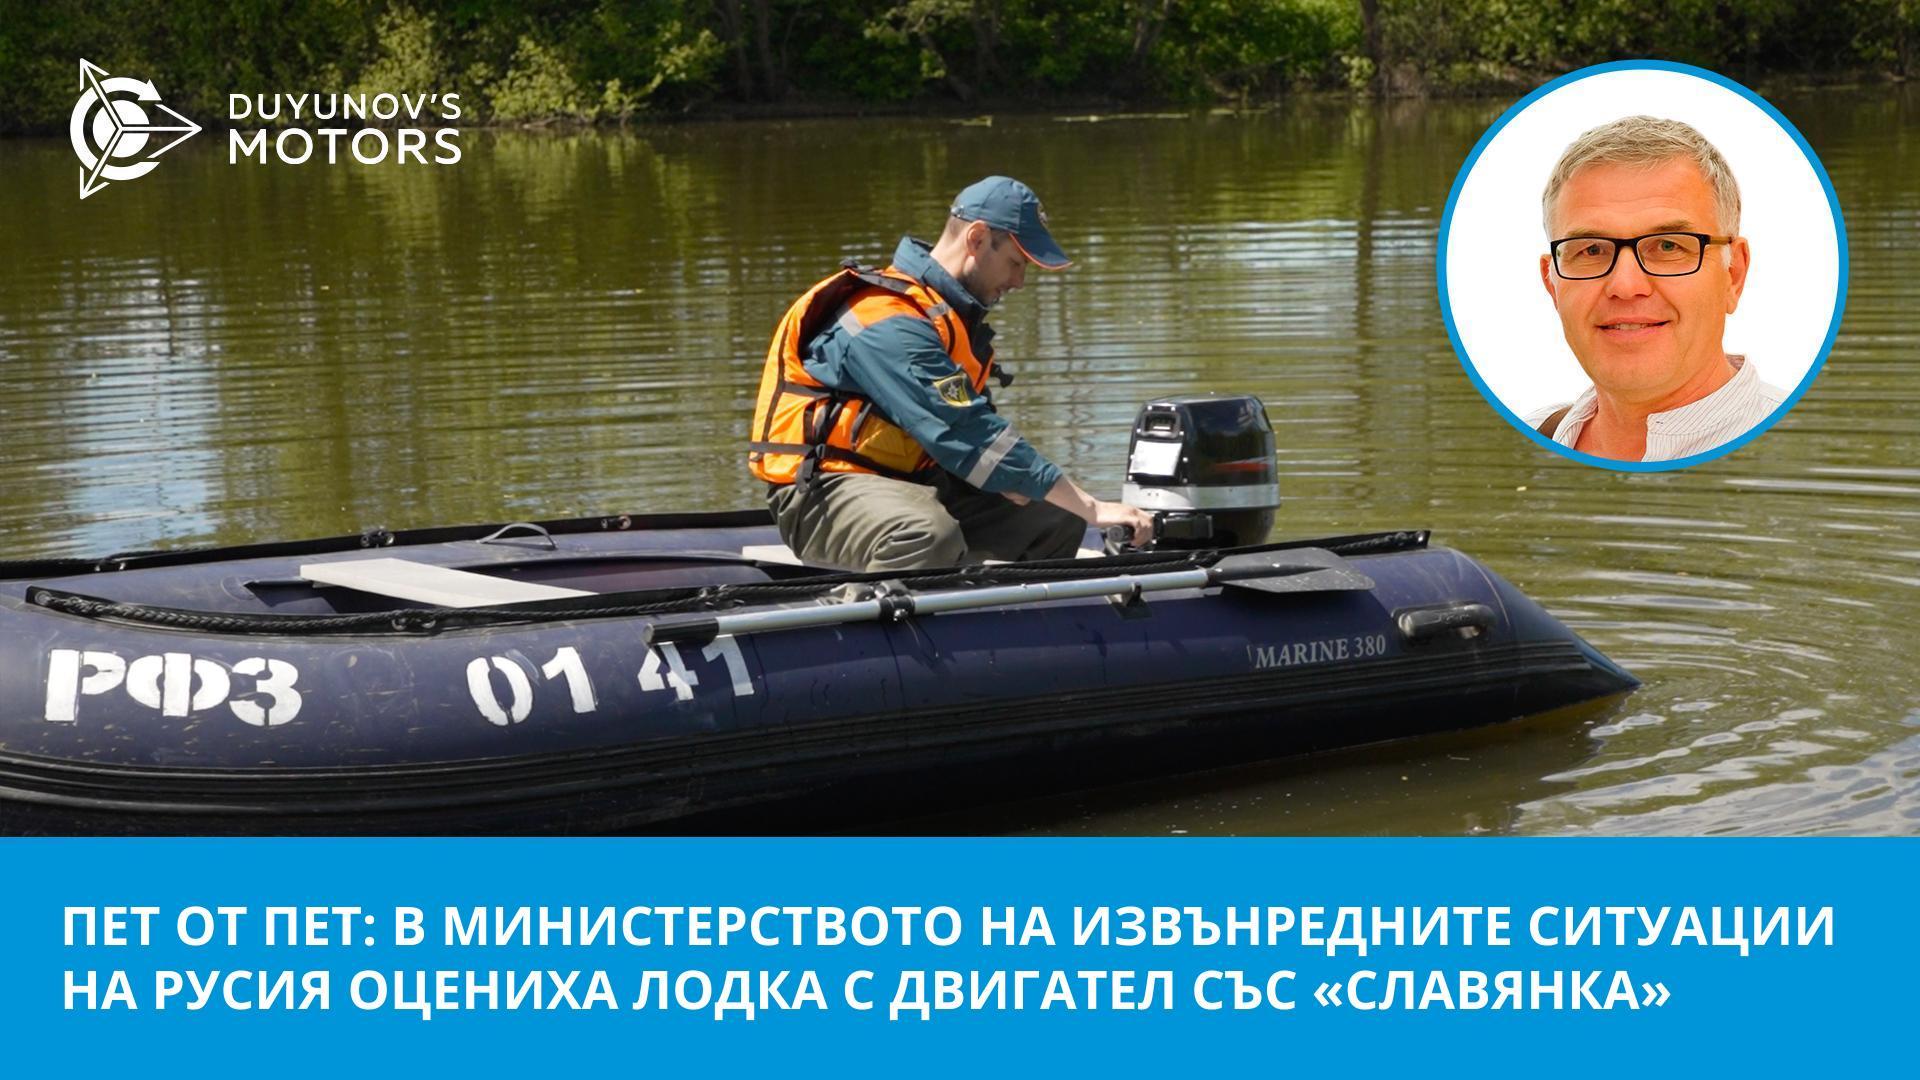 «Пет от пет»: в Министерството на извънредните ситуации на Русия оцениха лодка с двигател със «Славянка»